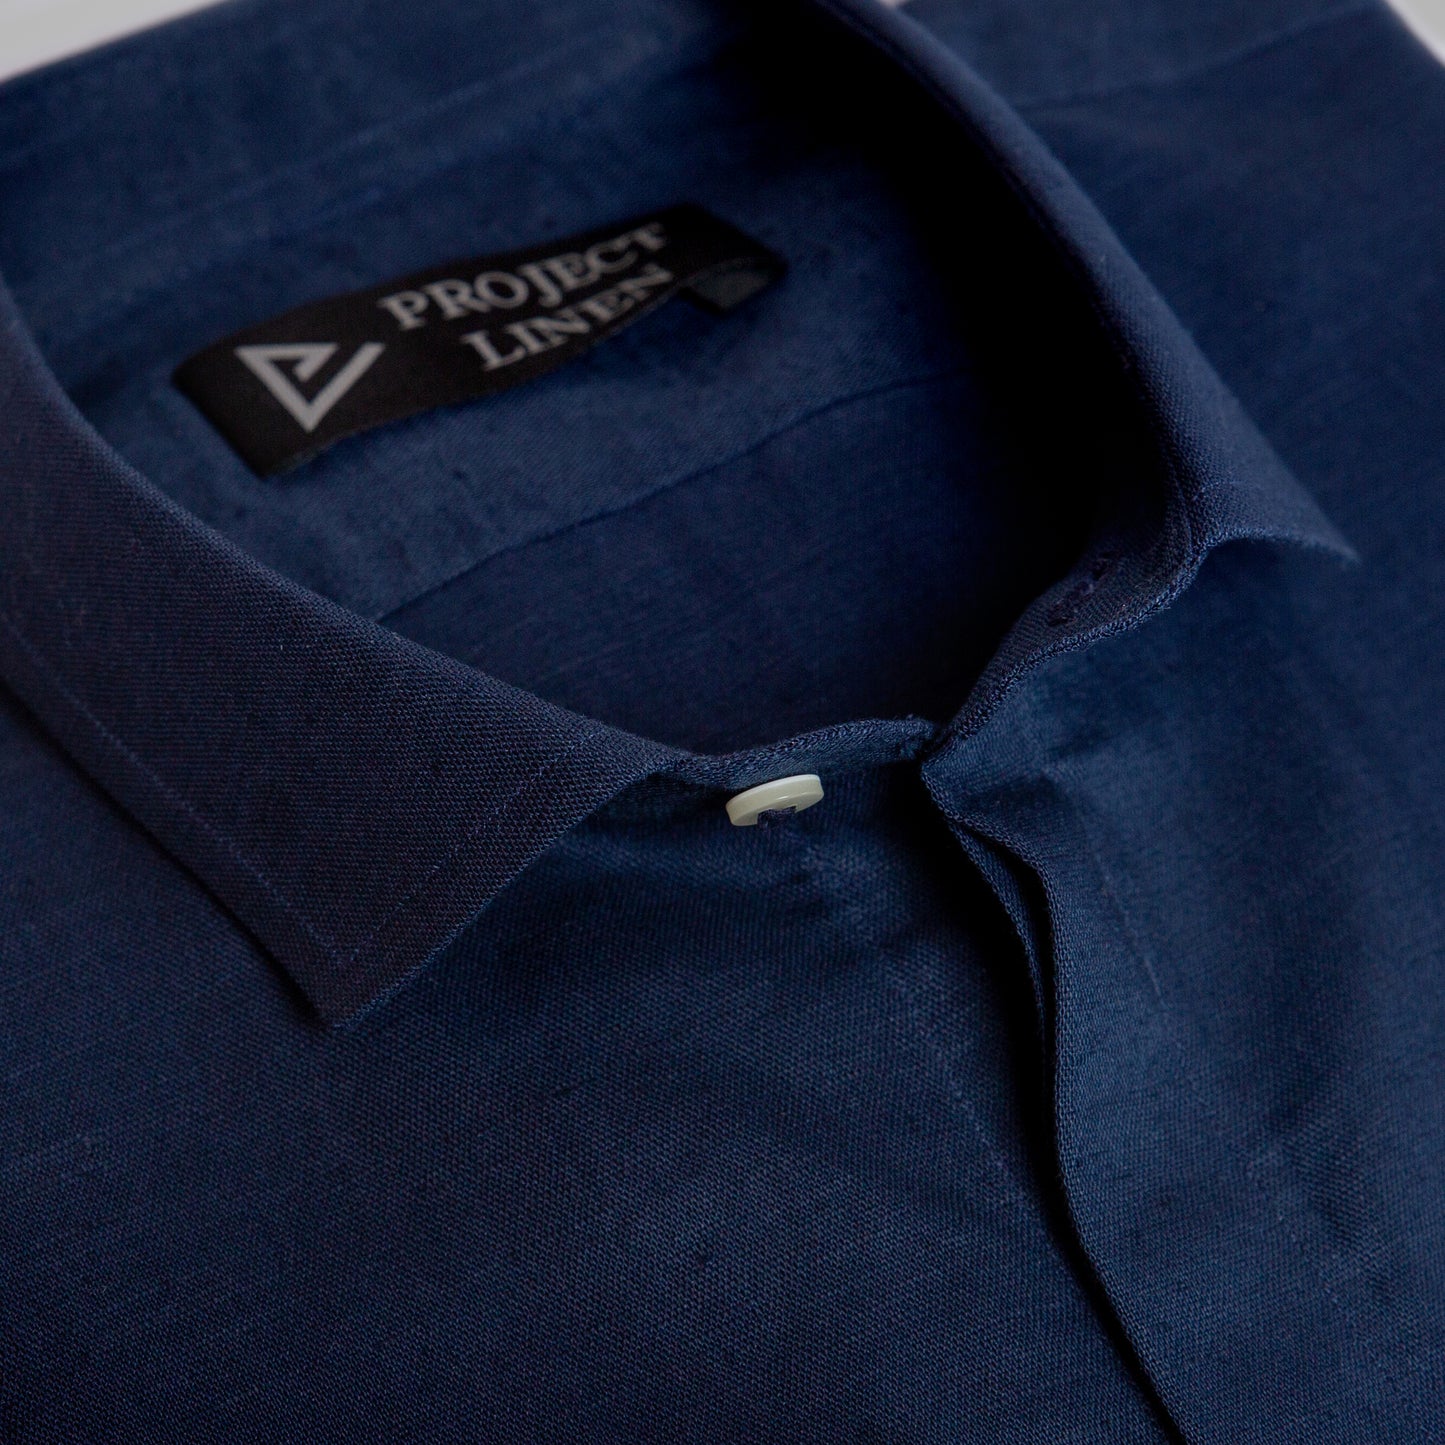 Navy Blue Linen Shirt - Her's